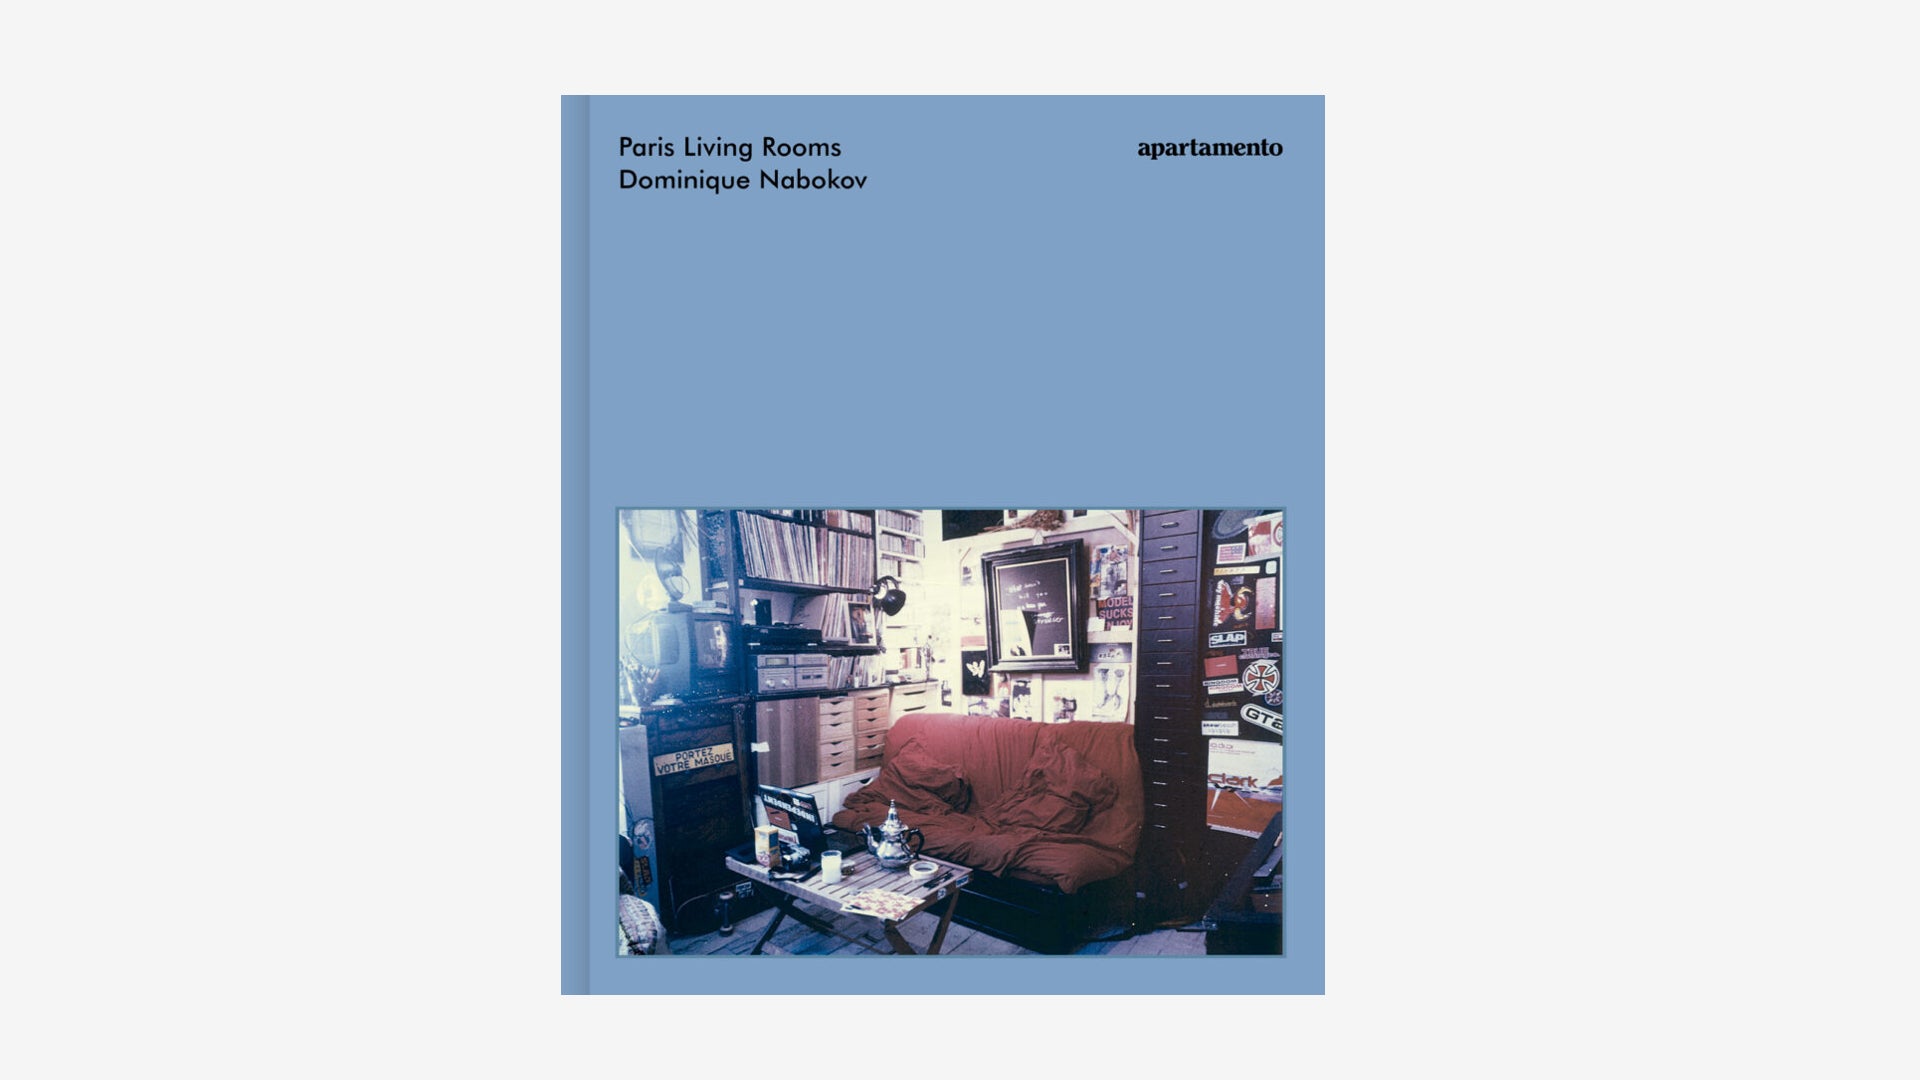 paris-living-rooms-dominique-nabokov-apartamento-books